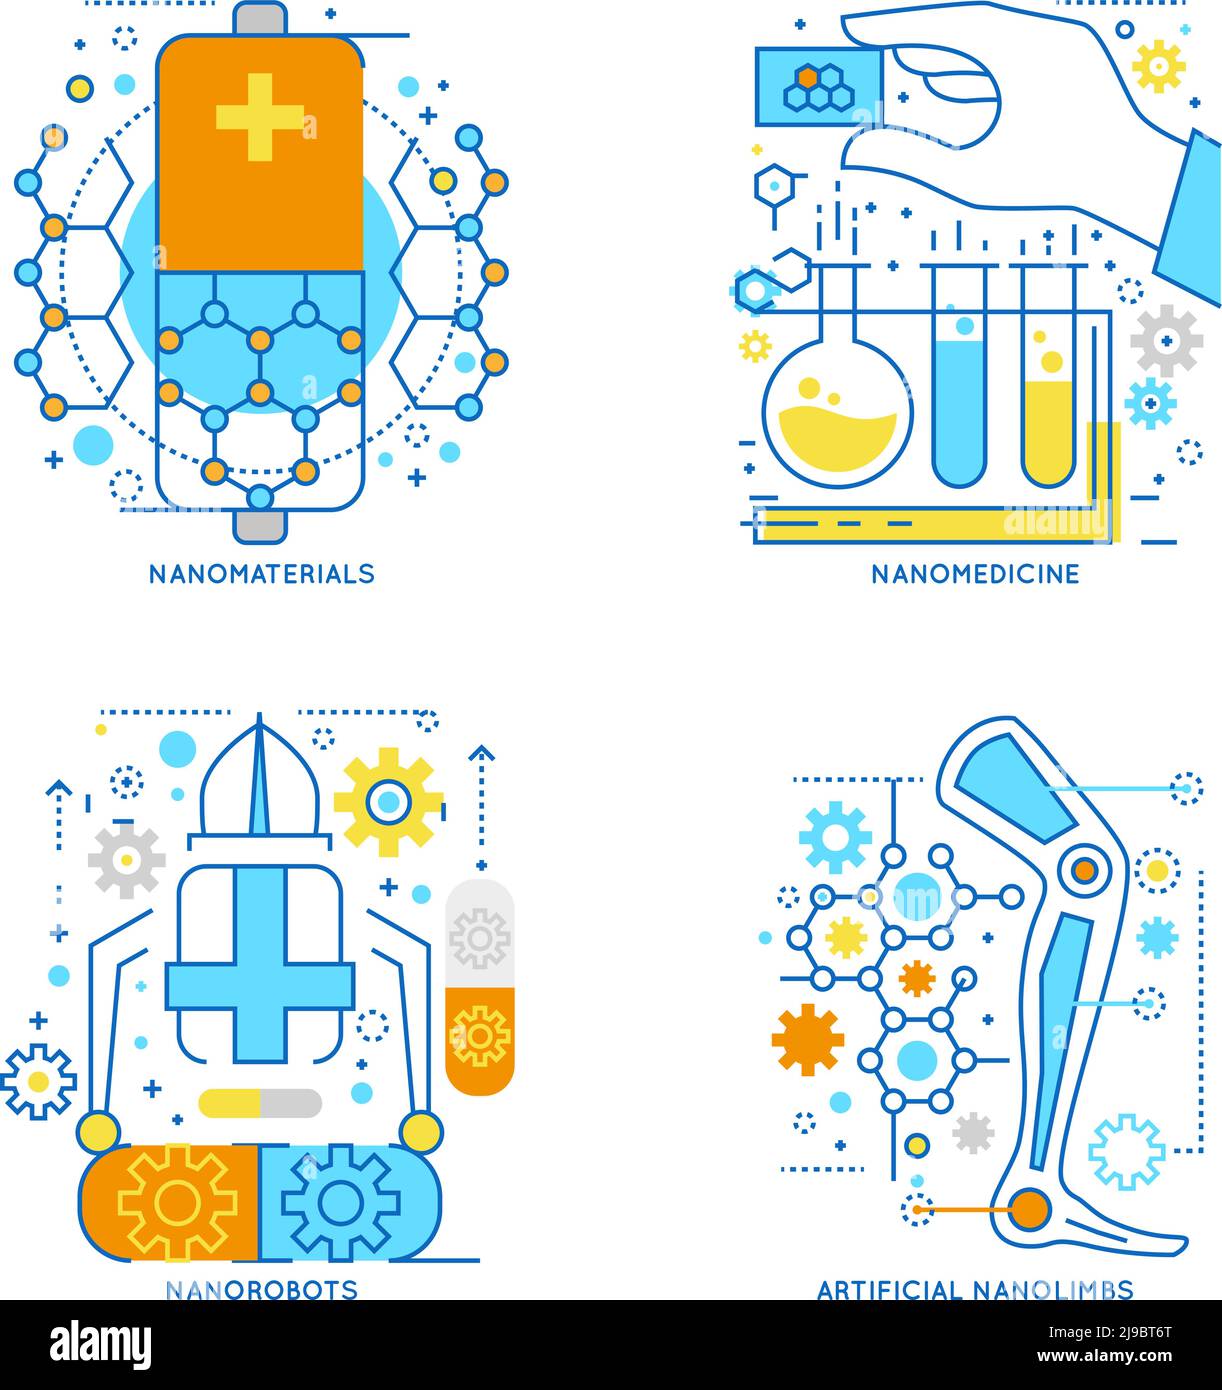 Nanotechnologie farbige lineare Kompositionen einschließlich innovativer Materialien und medizinische Behandlung Roboter und künstliche Gliedmaßen isoliert Vektor illustrati Stock Vektor